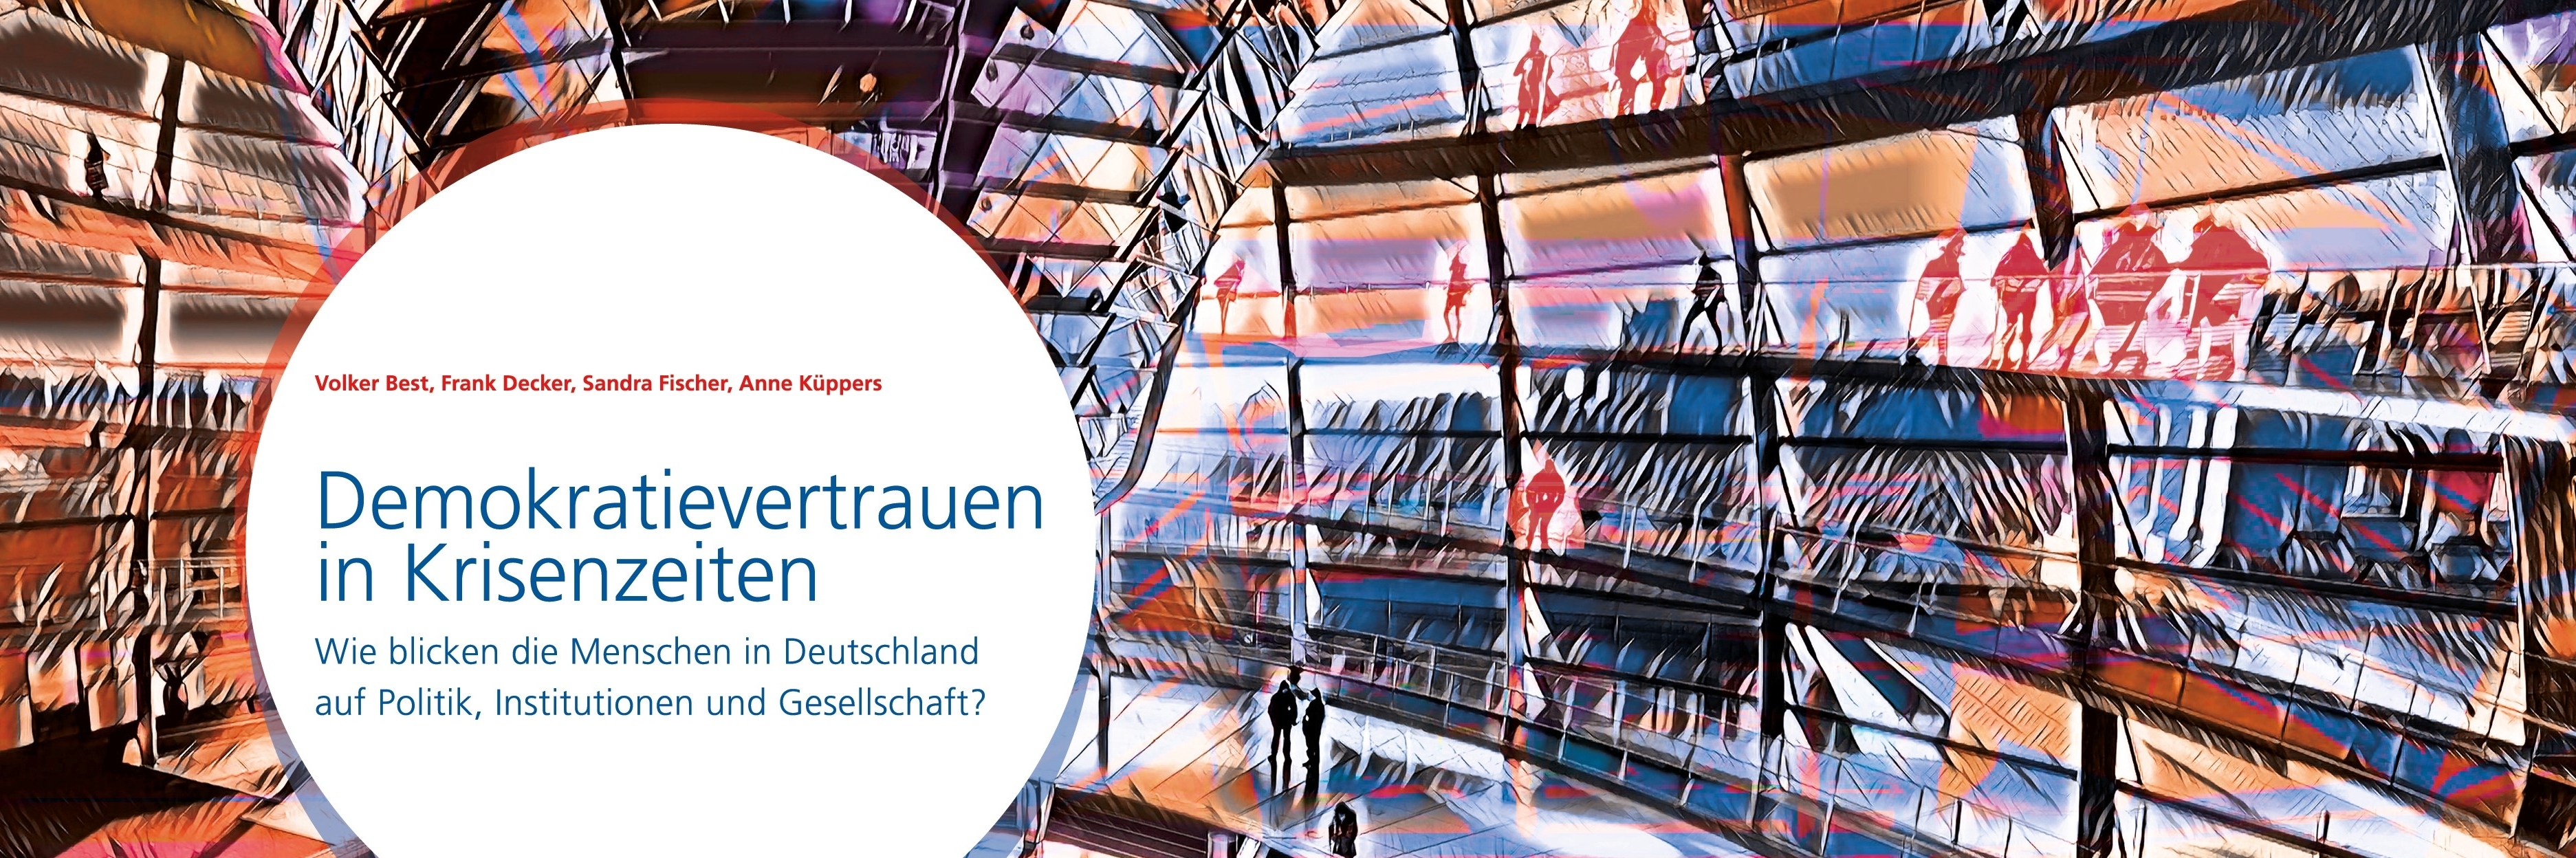 Das Innere der Kuppel des Deutschen Bundestages mit farbigen Lichtreflexen und dem Titel der Studie: Demokratievertrauen in Krisenzeiten